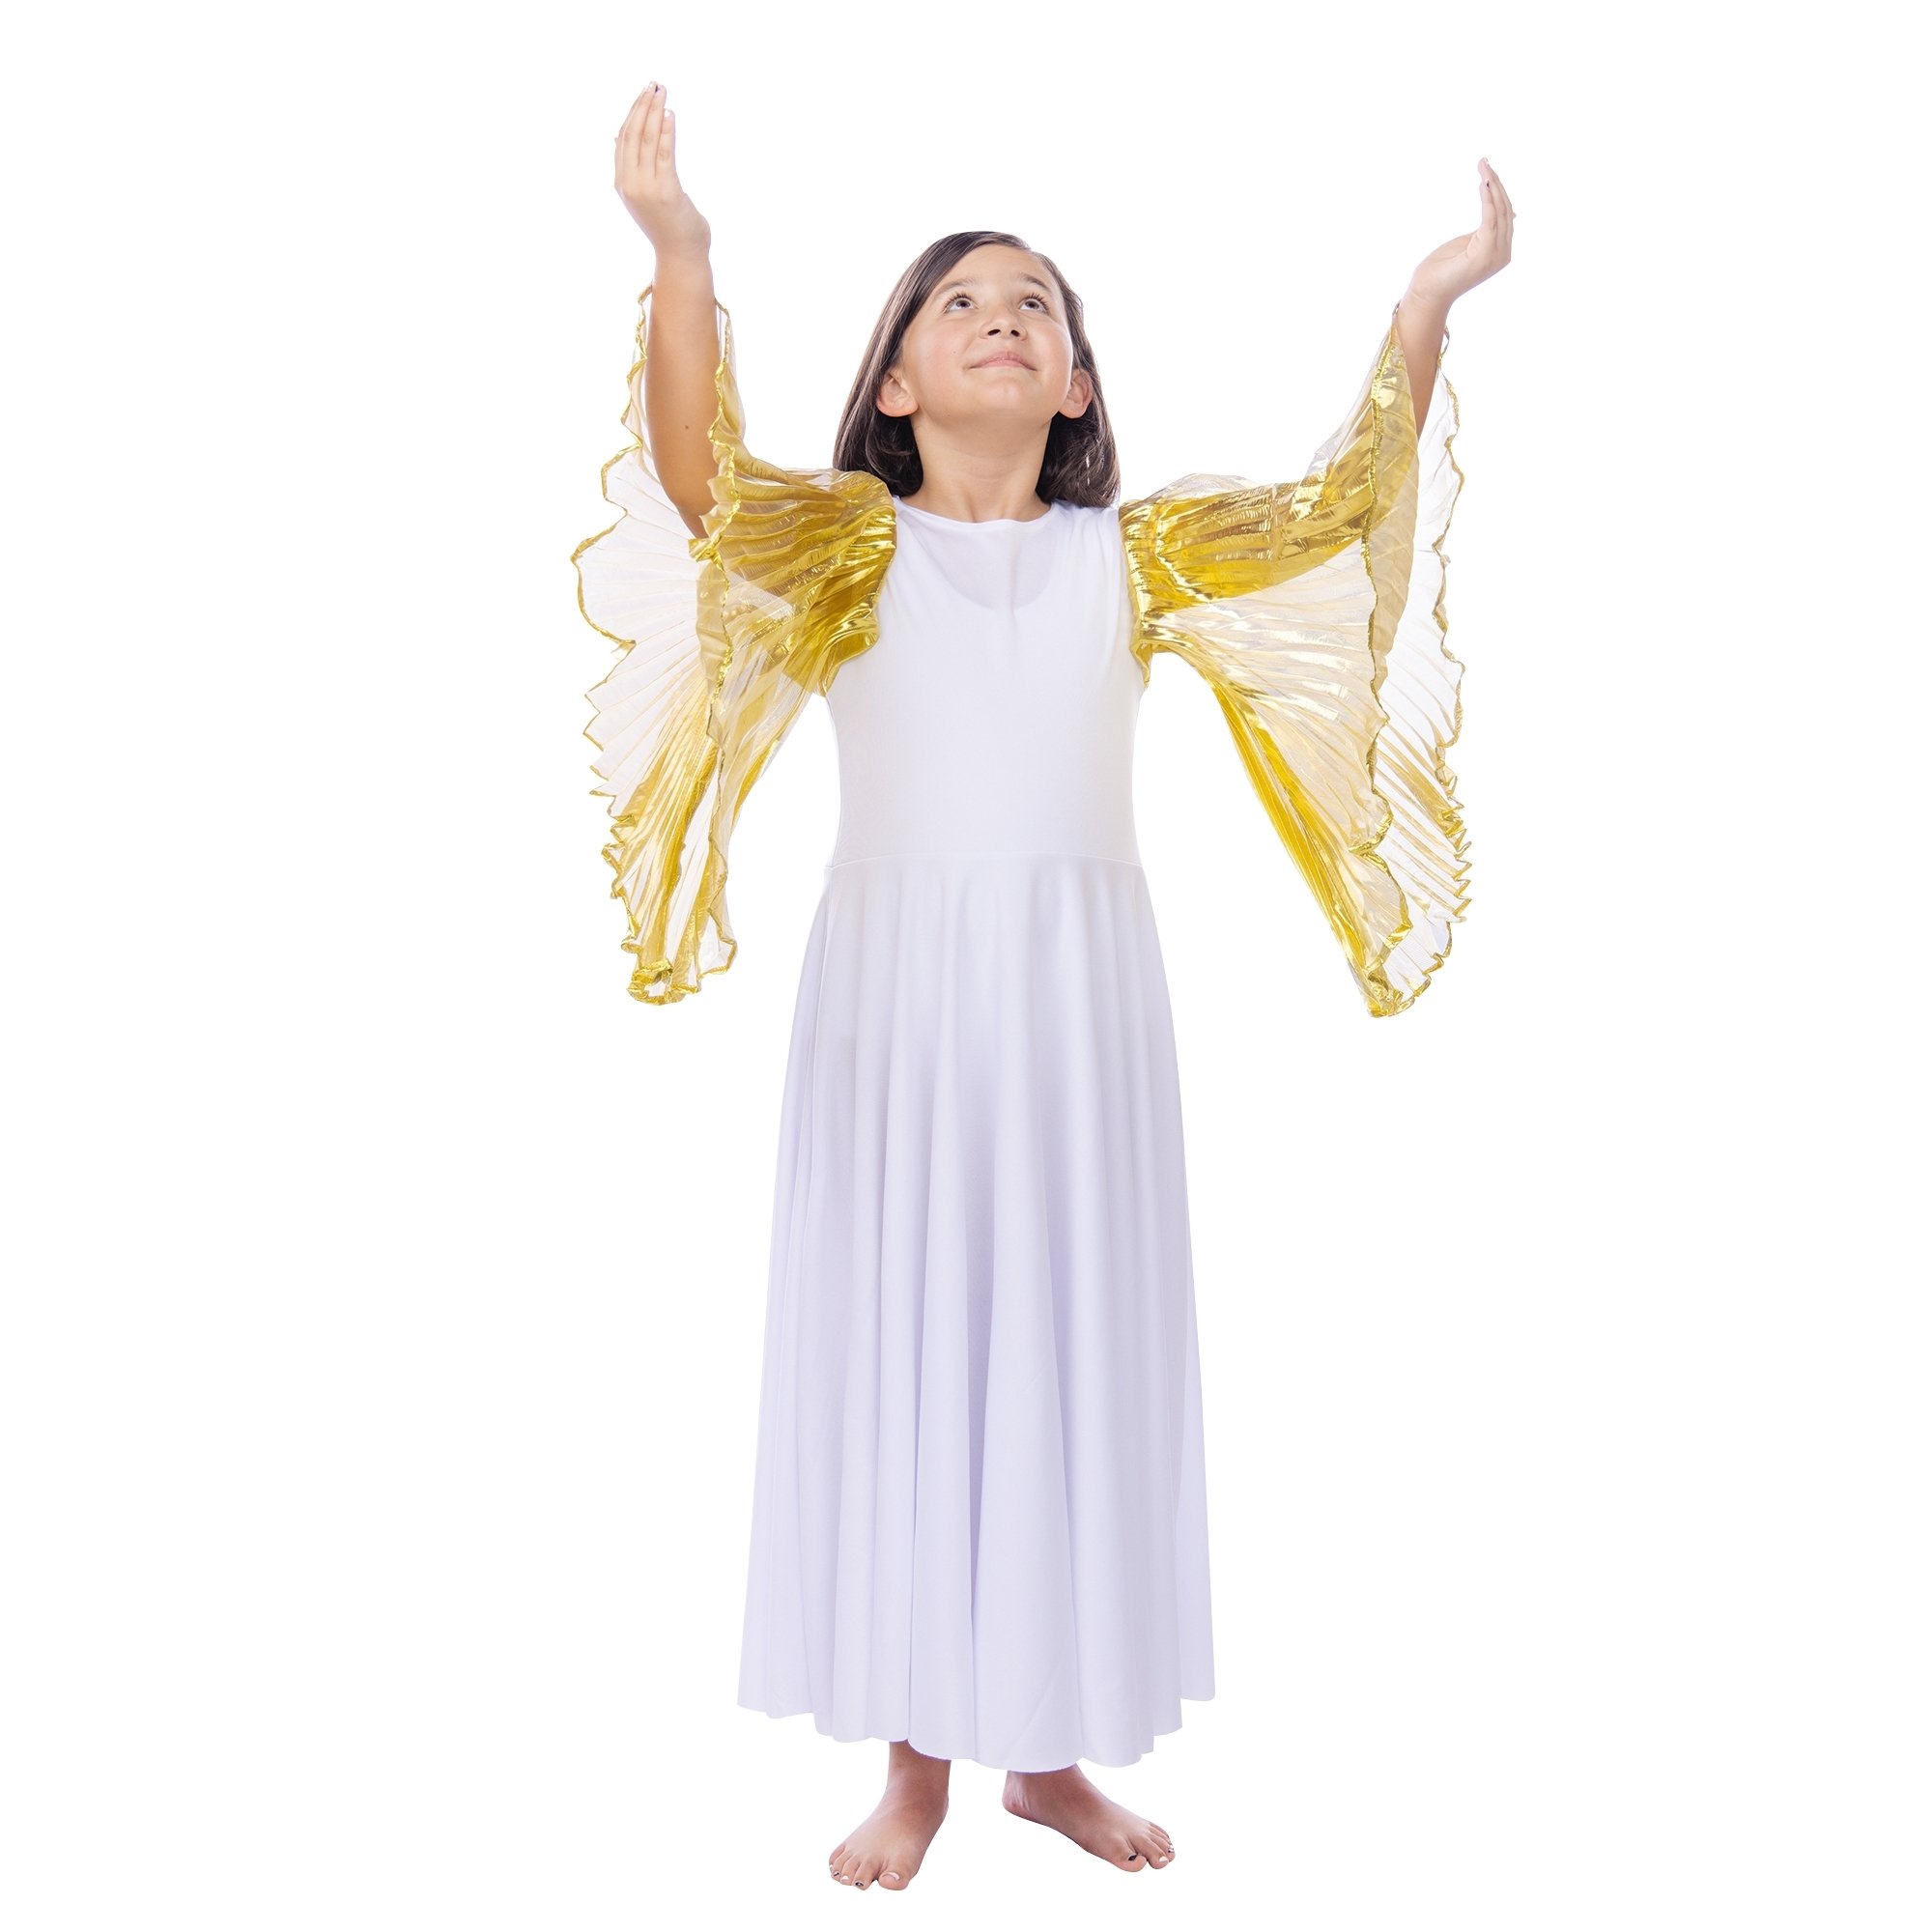 Danzcue Praise Dance Full Length Wing Sleeve Dress